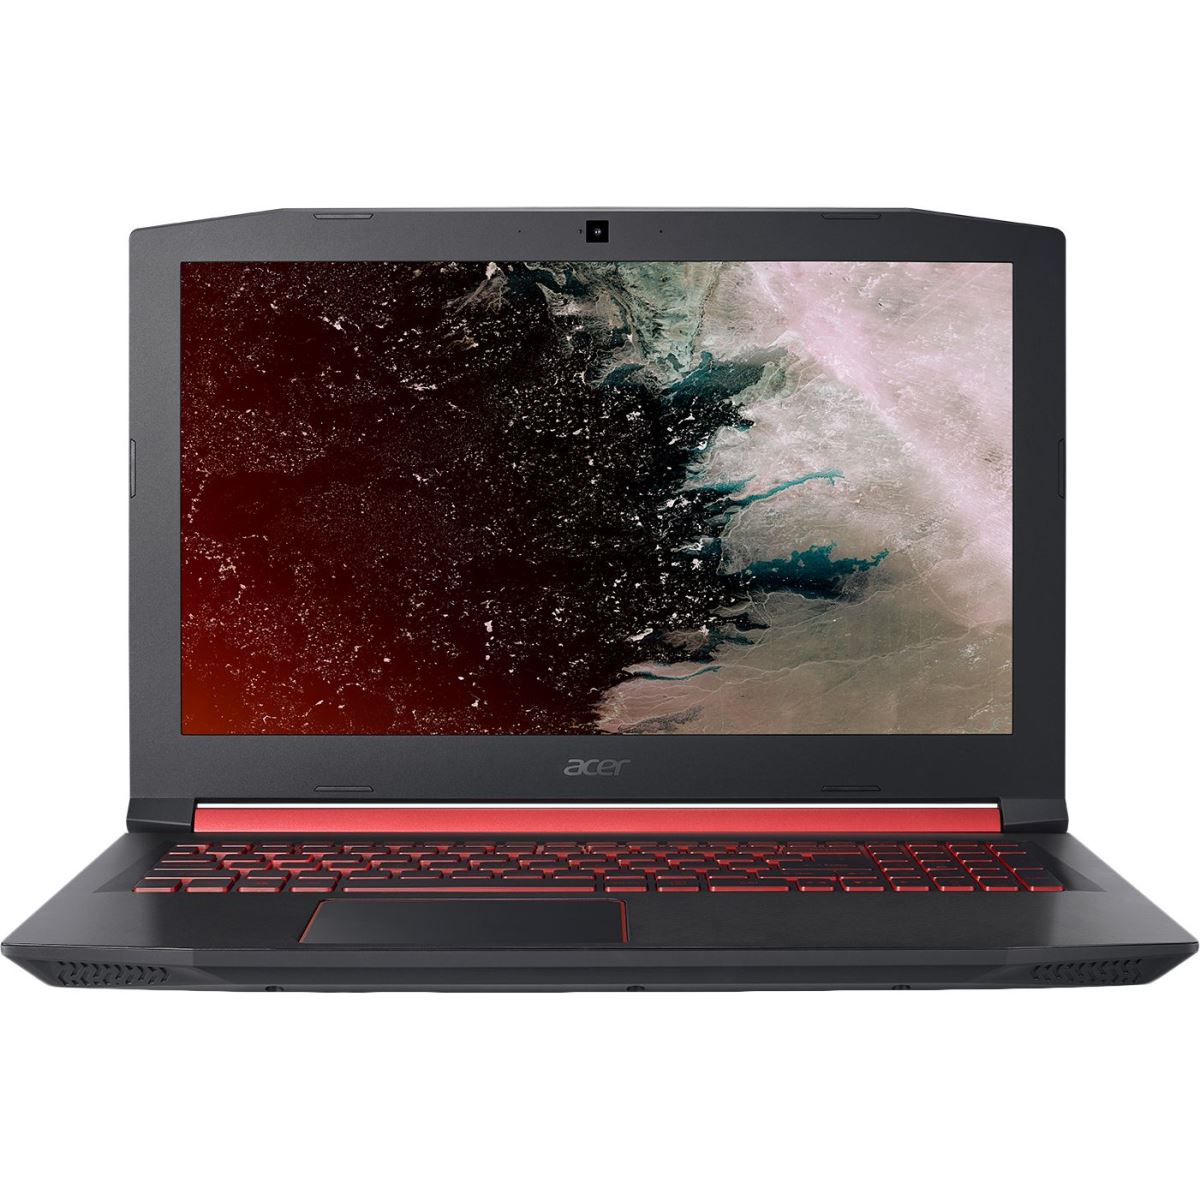 Laptop Acer Nitro 5 AN515-42-R7FK, 15.6" FHD, AMD Ryzen™ 7 2700U, AMD Radeon™ RX 560X 4GB, RAM 8 GB DDR4, SSD 256GB, Boot-up Linux